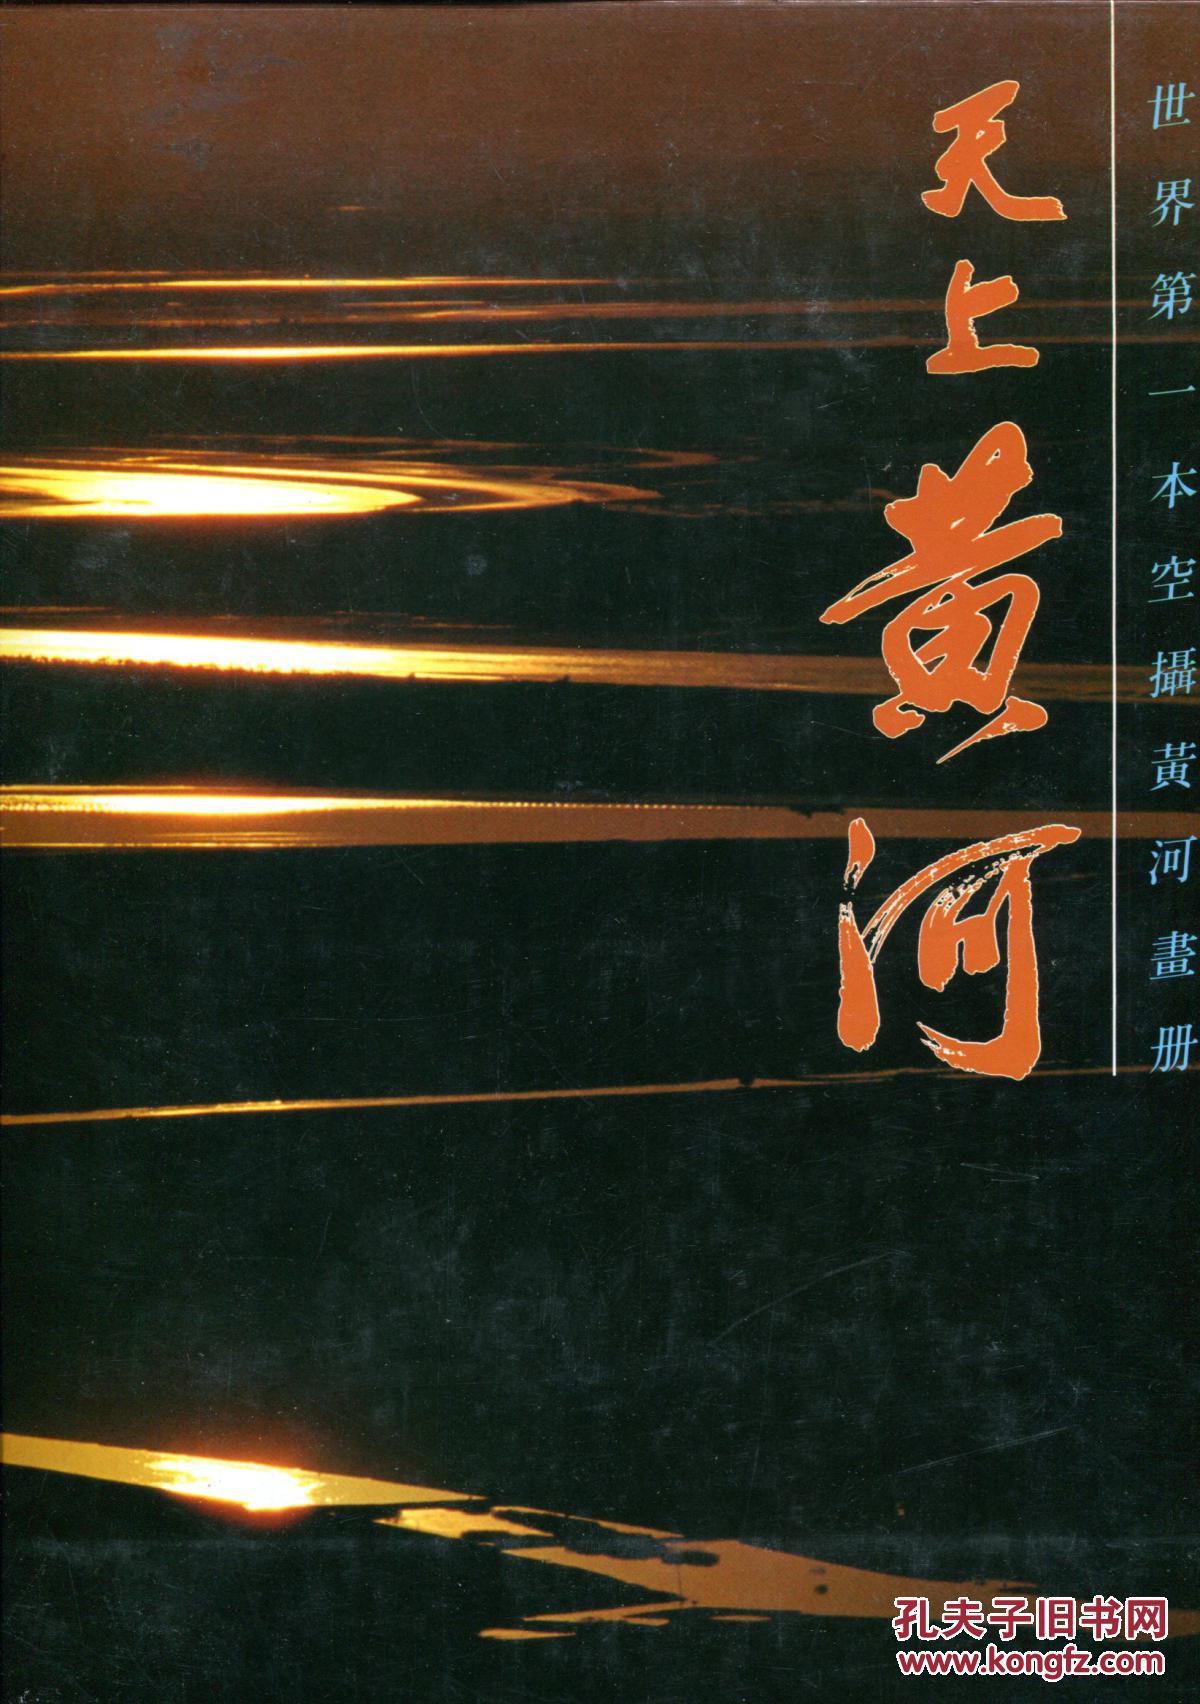 天上黄河-世界第一本空摄黄河画册